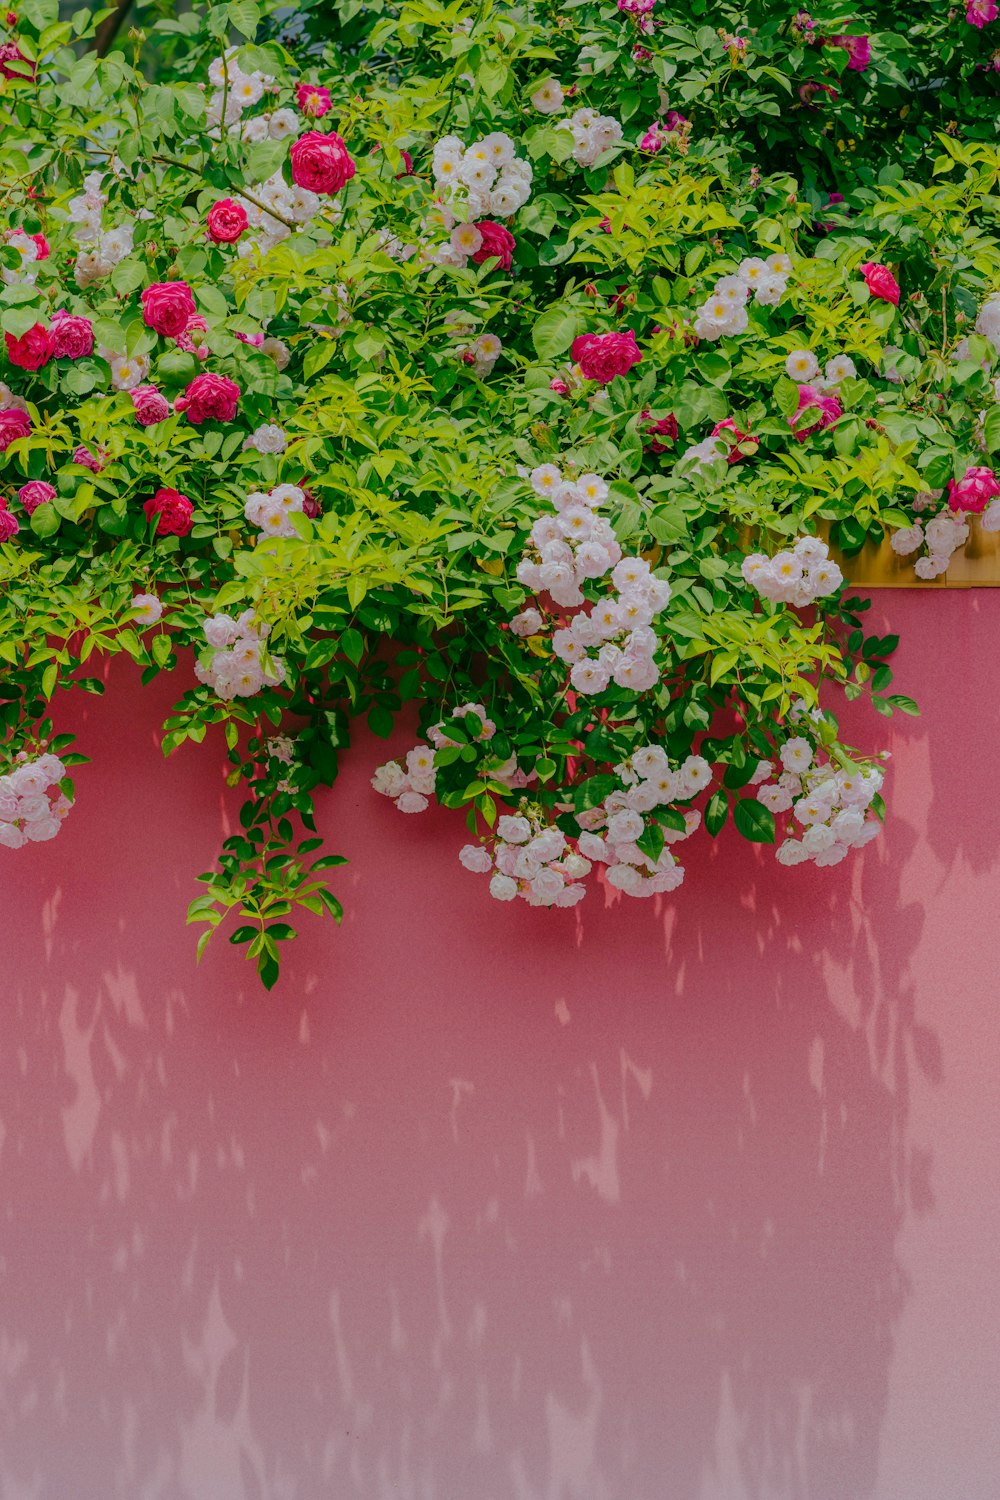 une jardinière remplie de beaucoup de fleurs roses et blanches